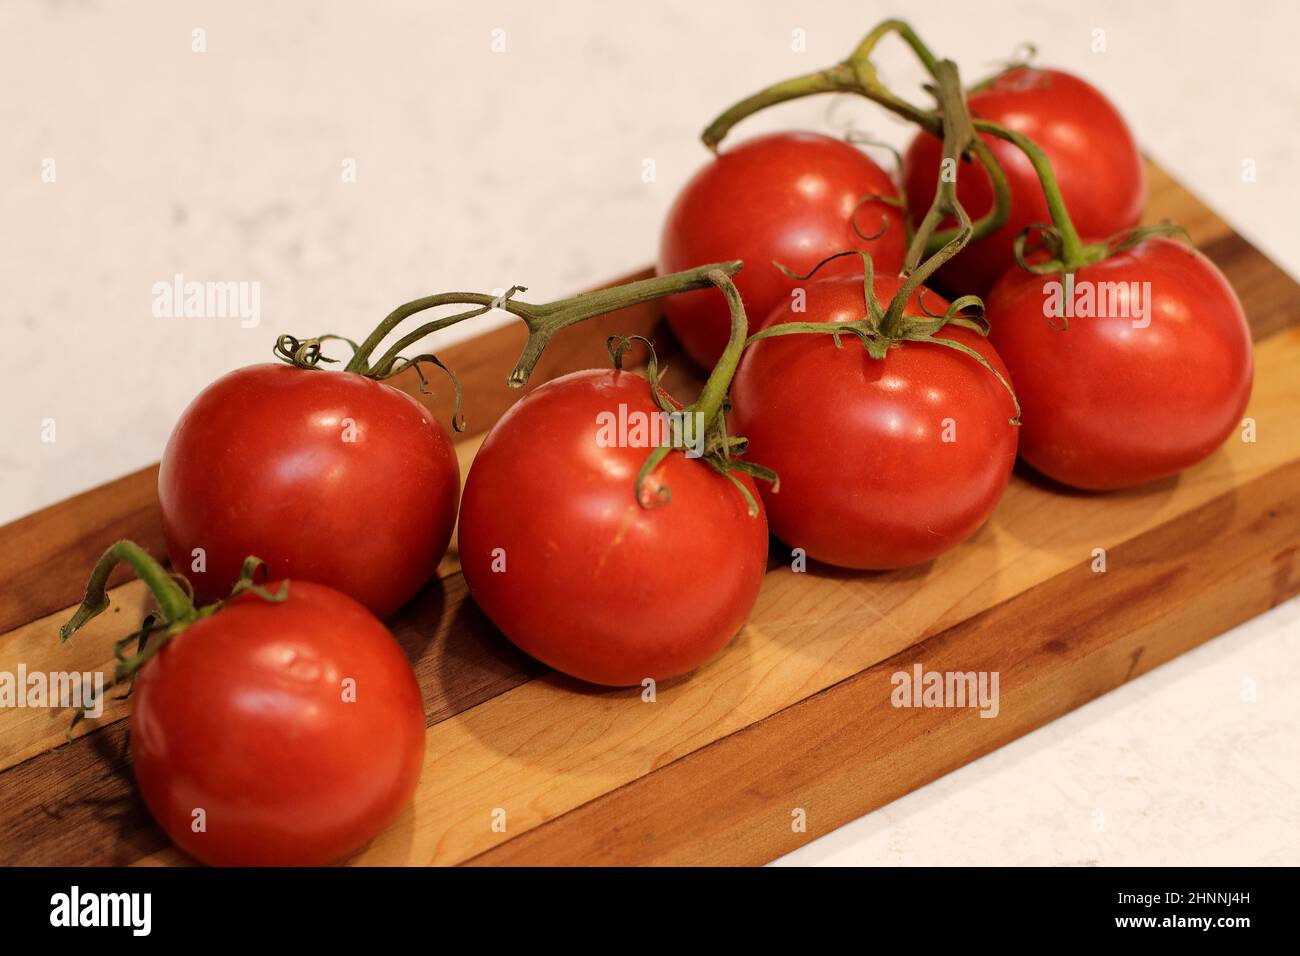 Su un banco da cucina ci sono 7 pomodori rossi maturati a vite con steli verdi su un tagliere di legno scuro e chiaro. Pomodori rossi con pomodori verdi Foto Stock